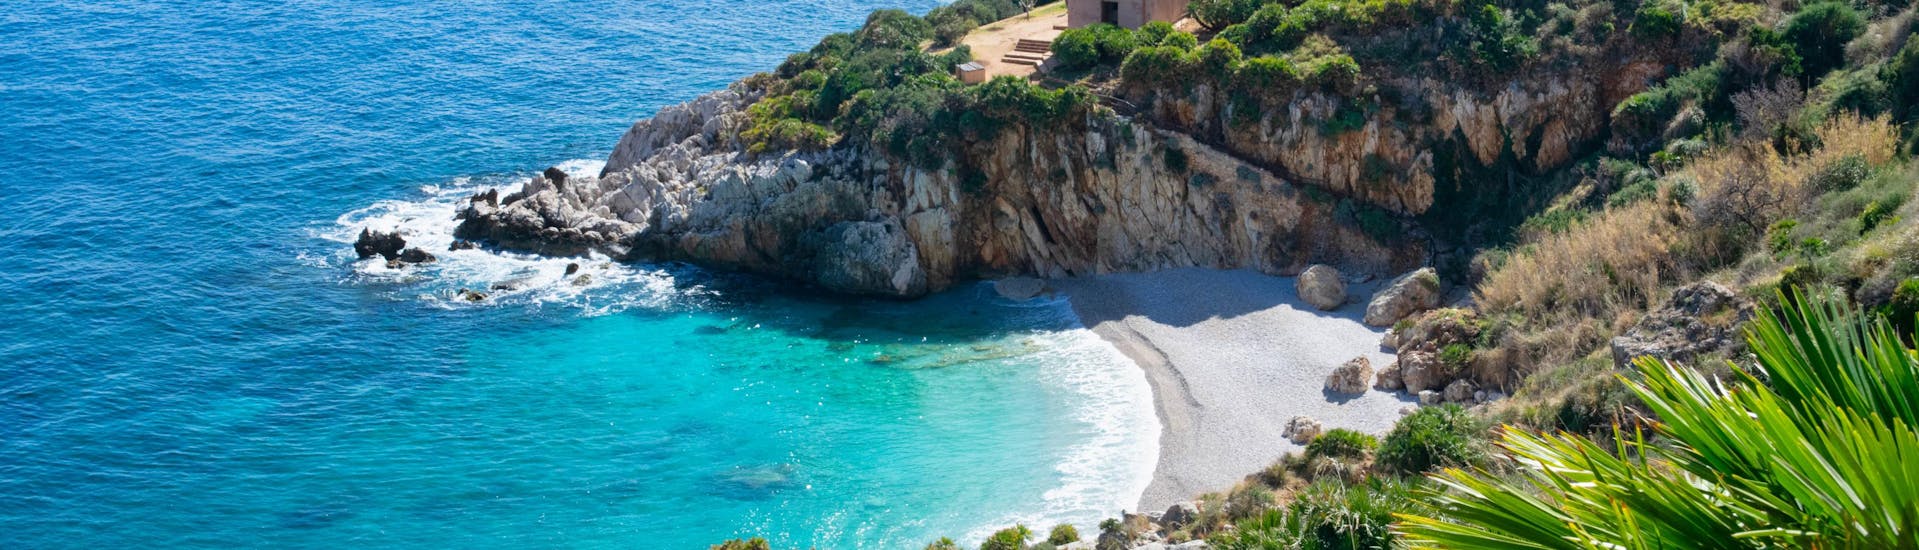 Blick auf die Cala dell'Uzzo, ein wunderschöner Strand, den man bei einer Bootsfahrt zur Riserva Naturale dello Zingaro sehen kann.